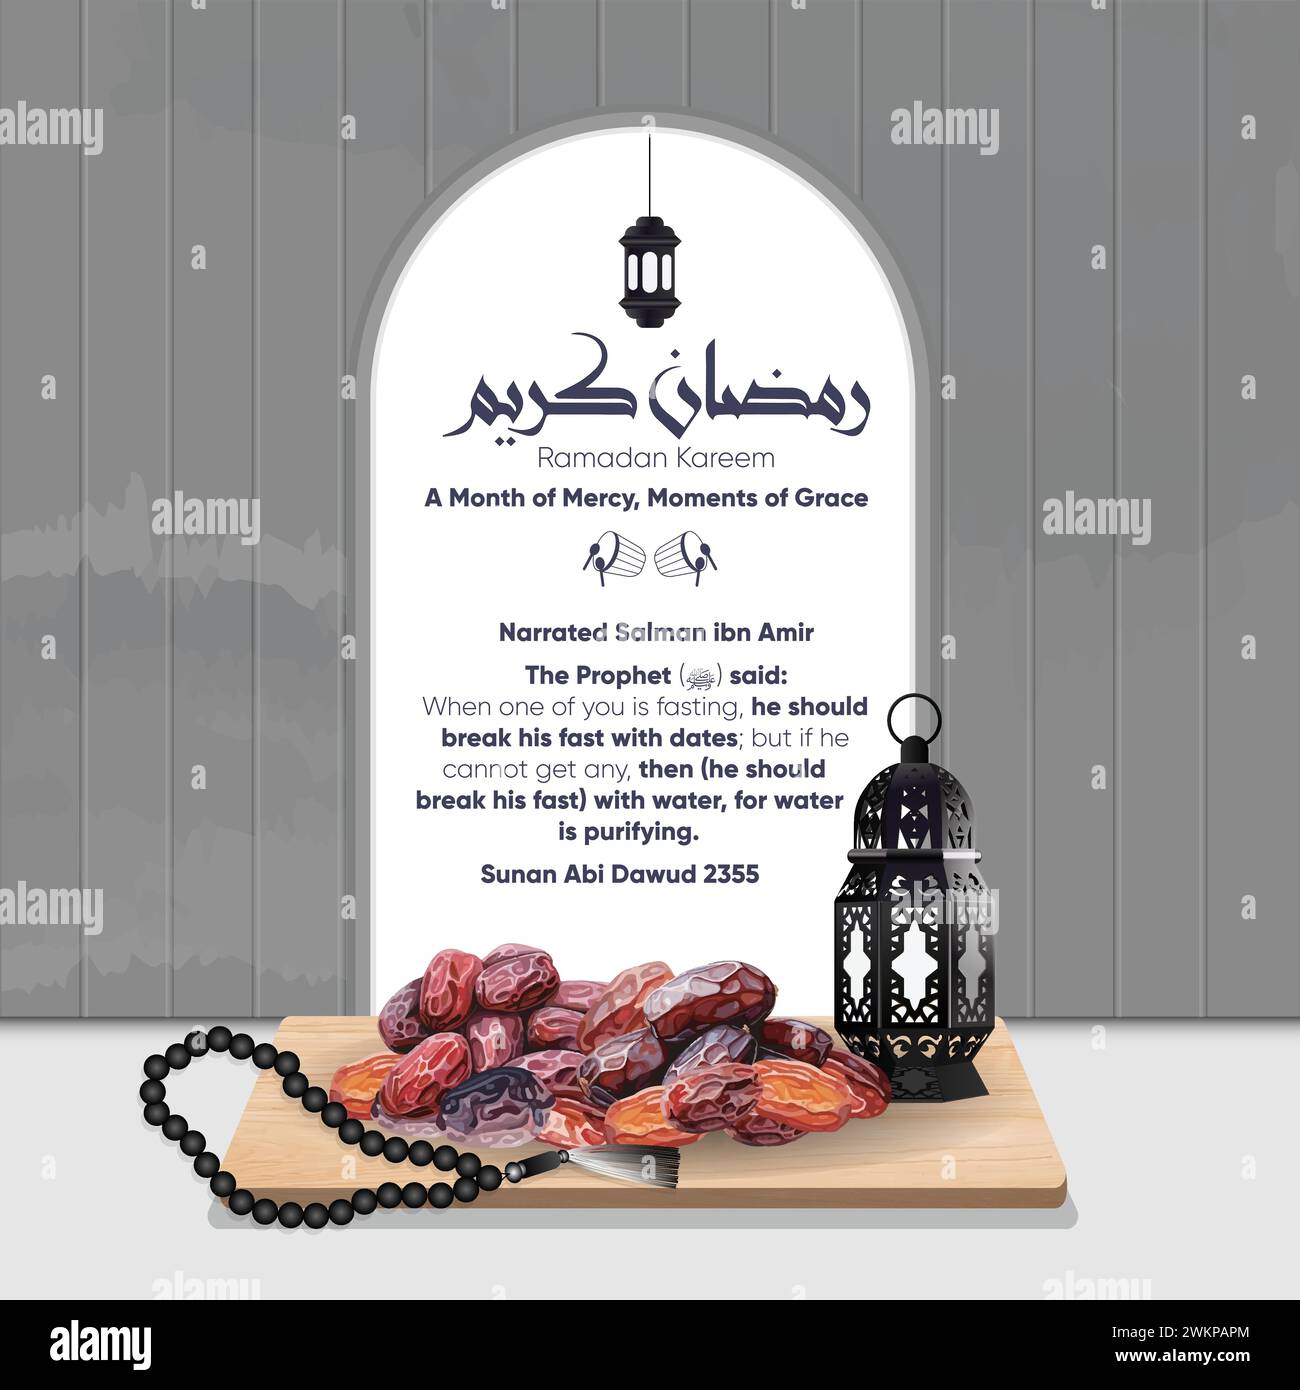 Fasten- und iftar-Konzept in Ramadan Kareem, geschmückt mit Datumsangaben und Tasbih. Die Illustration zeigt den Hadith über das Fasten. Stock Vektor